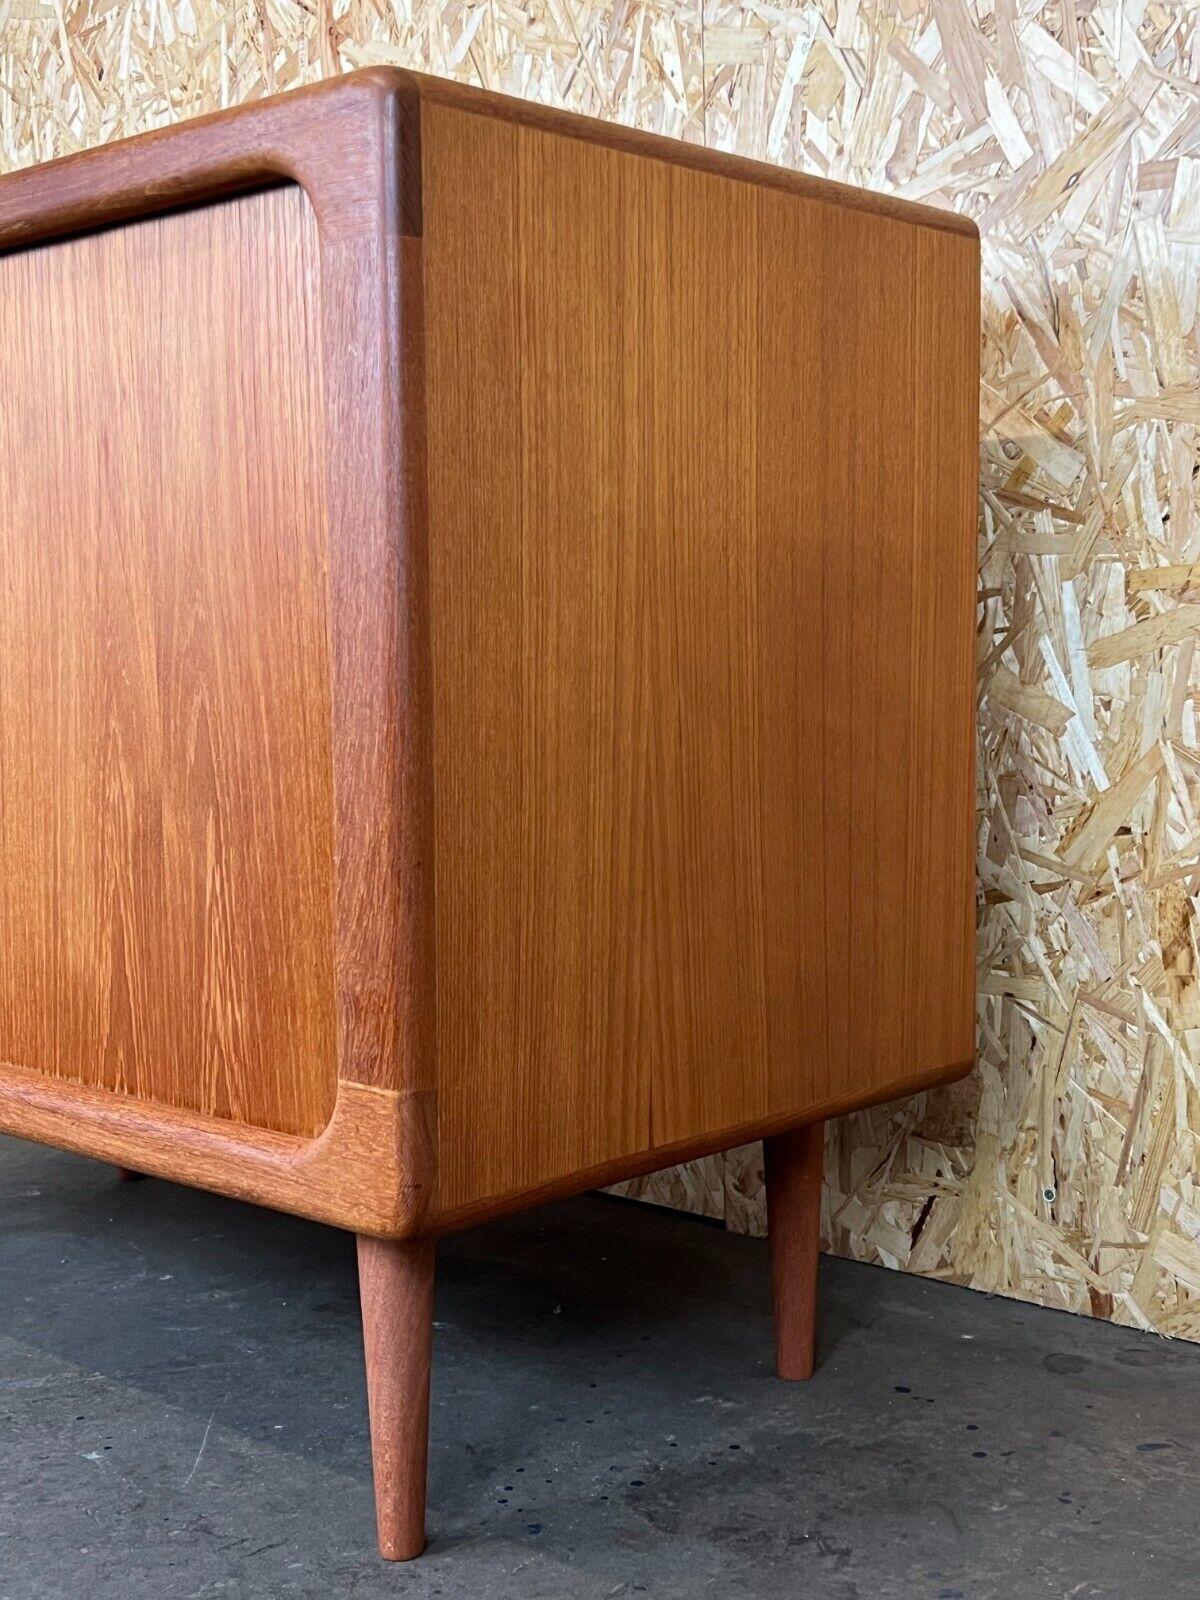 1960s-1970s Teak Dyrlund Sideboard Credenza Cabinet Danish Modern Design 4